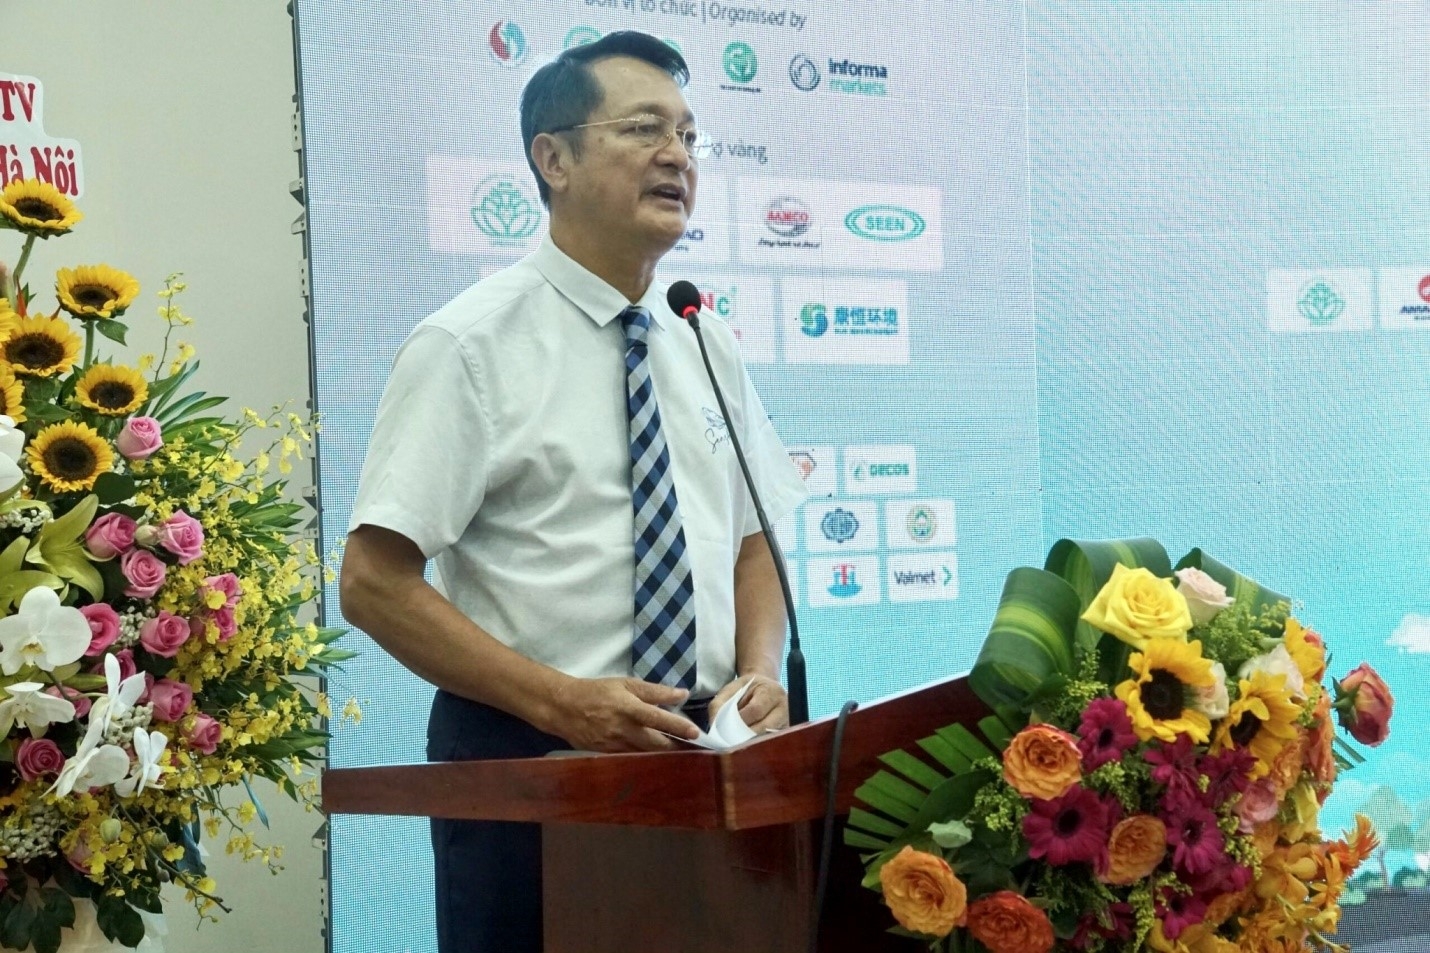 Hội thảo - Triển lãm quốc tế về Giải pháp và Công nghệ xử lý chất thải đô thị tại Việt Nam